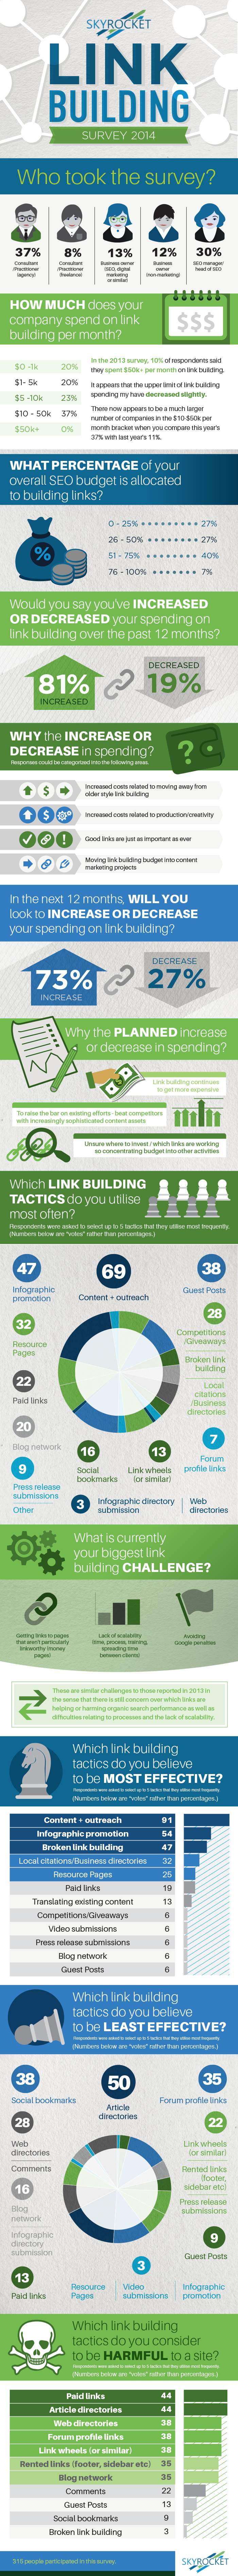 linkbuilding onderzoek infographic